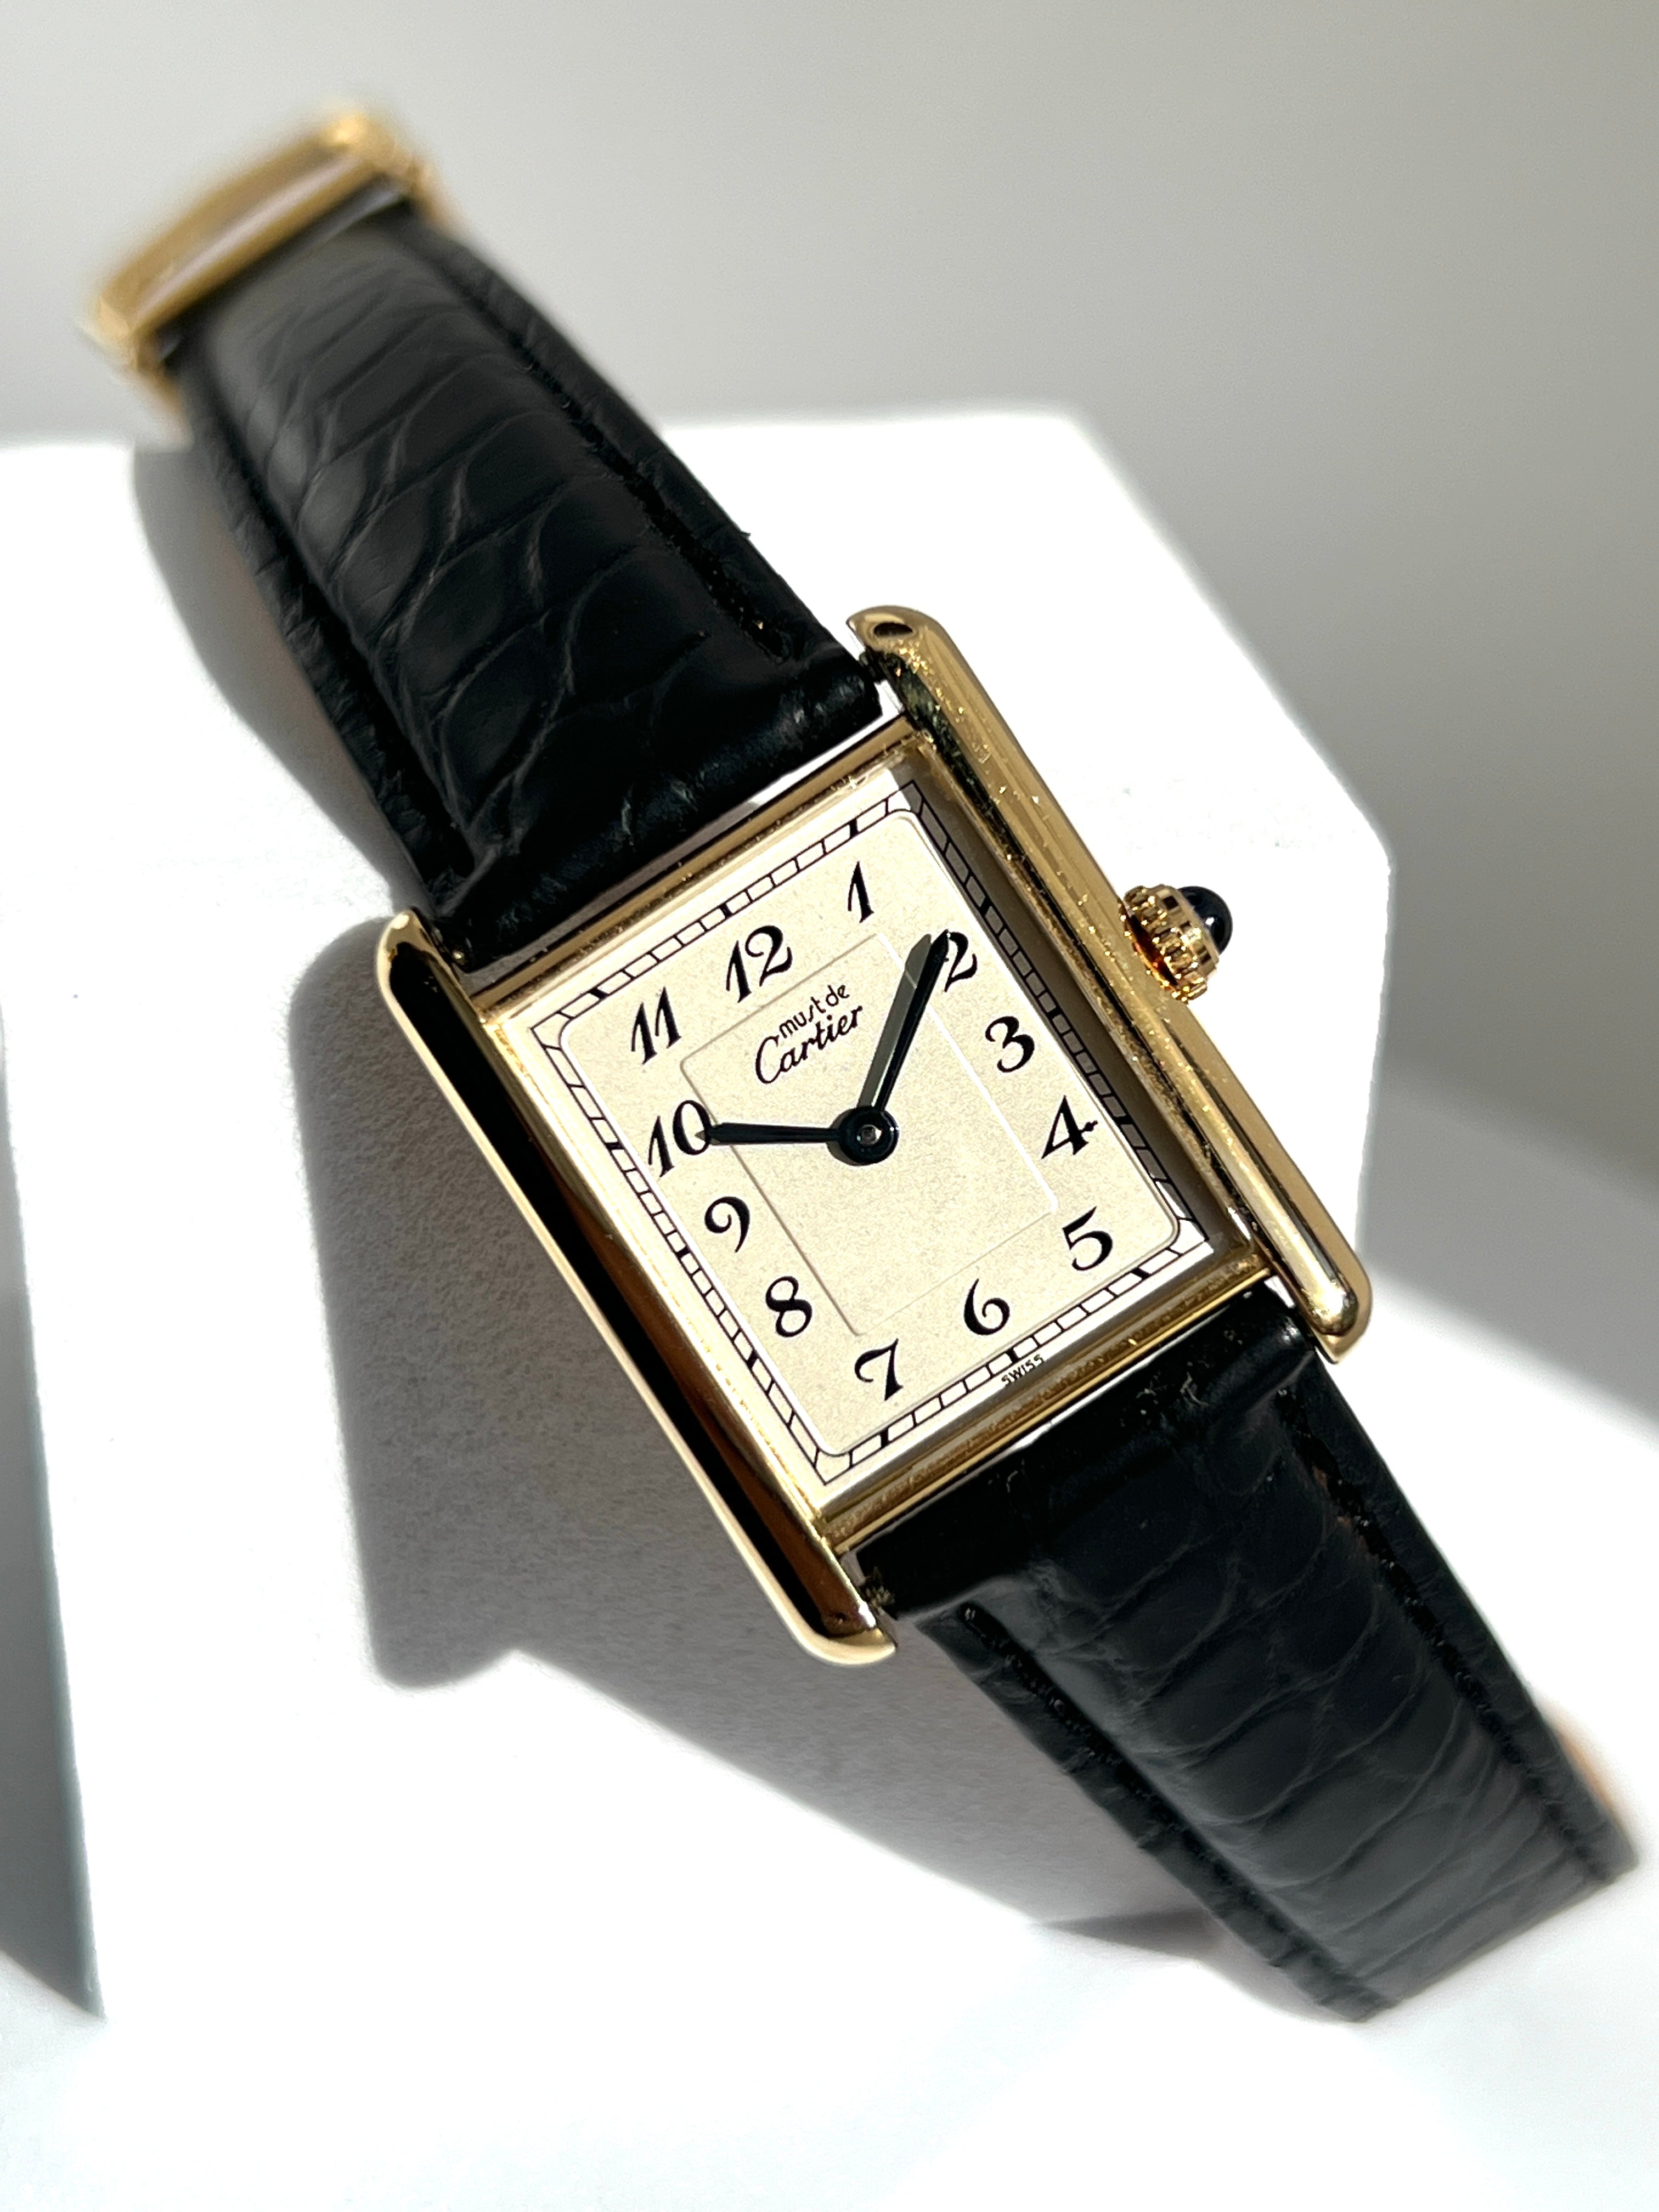 Cartier カルティエ 腕時計 ユニセックス ヴェルメイユブランドCa 